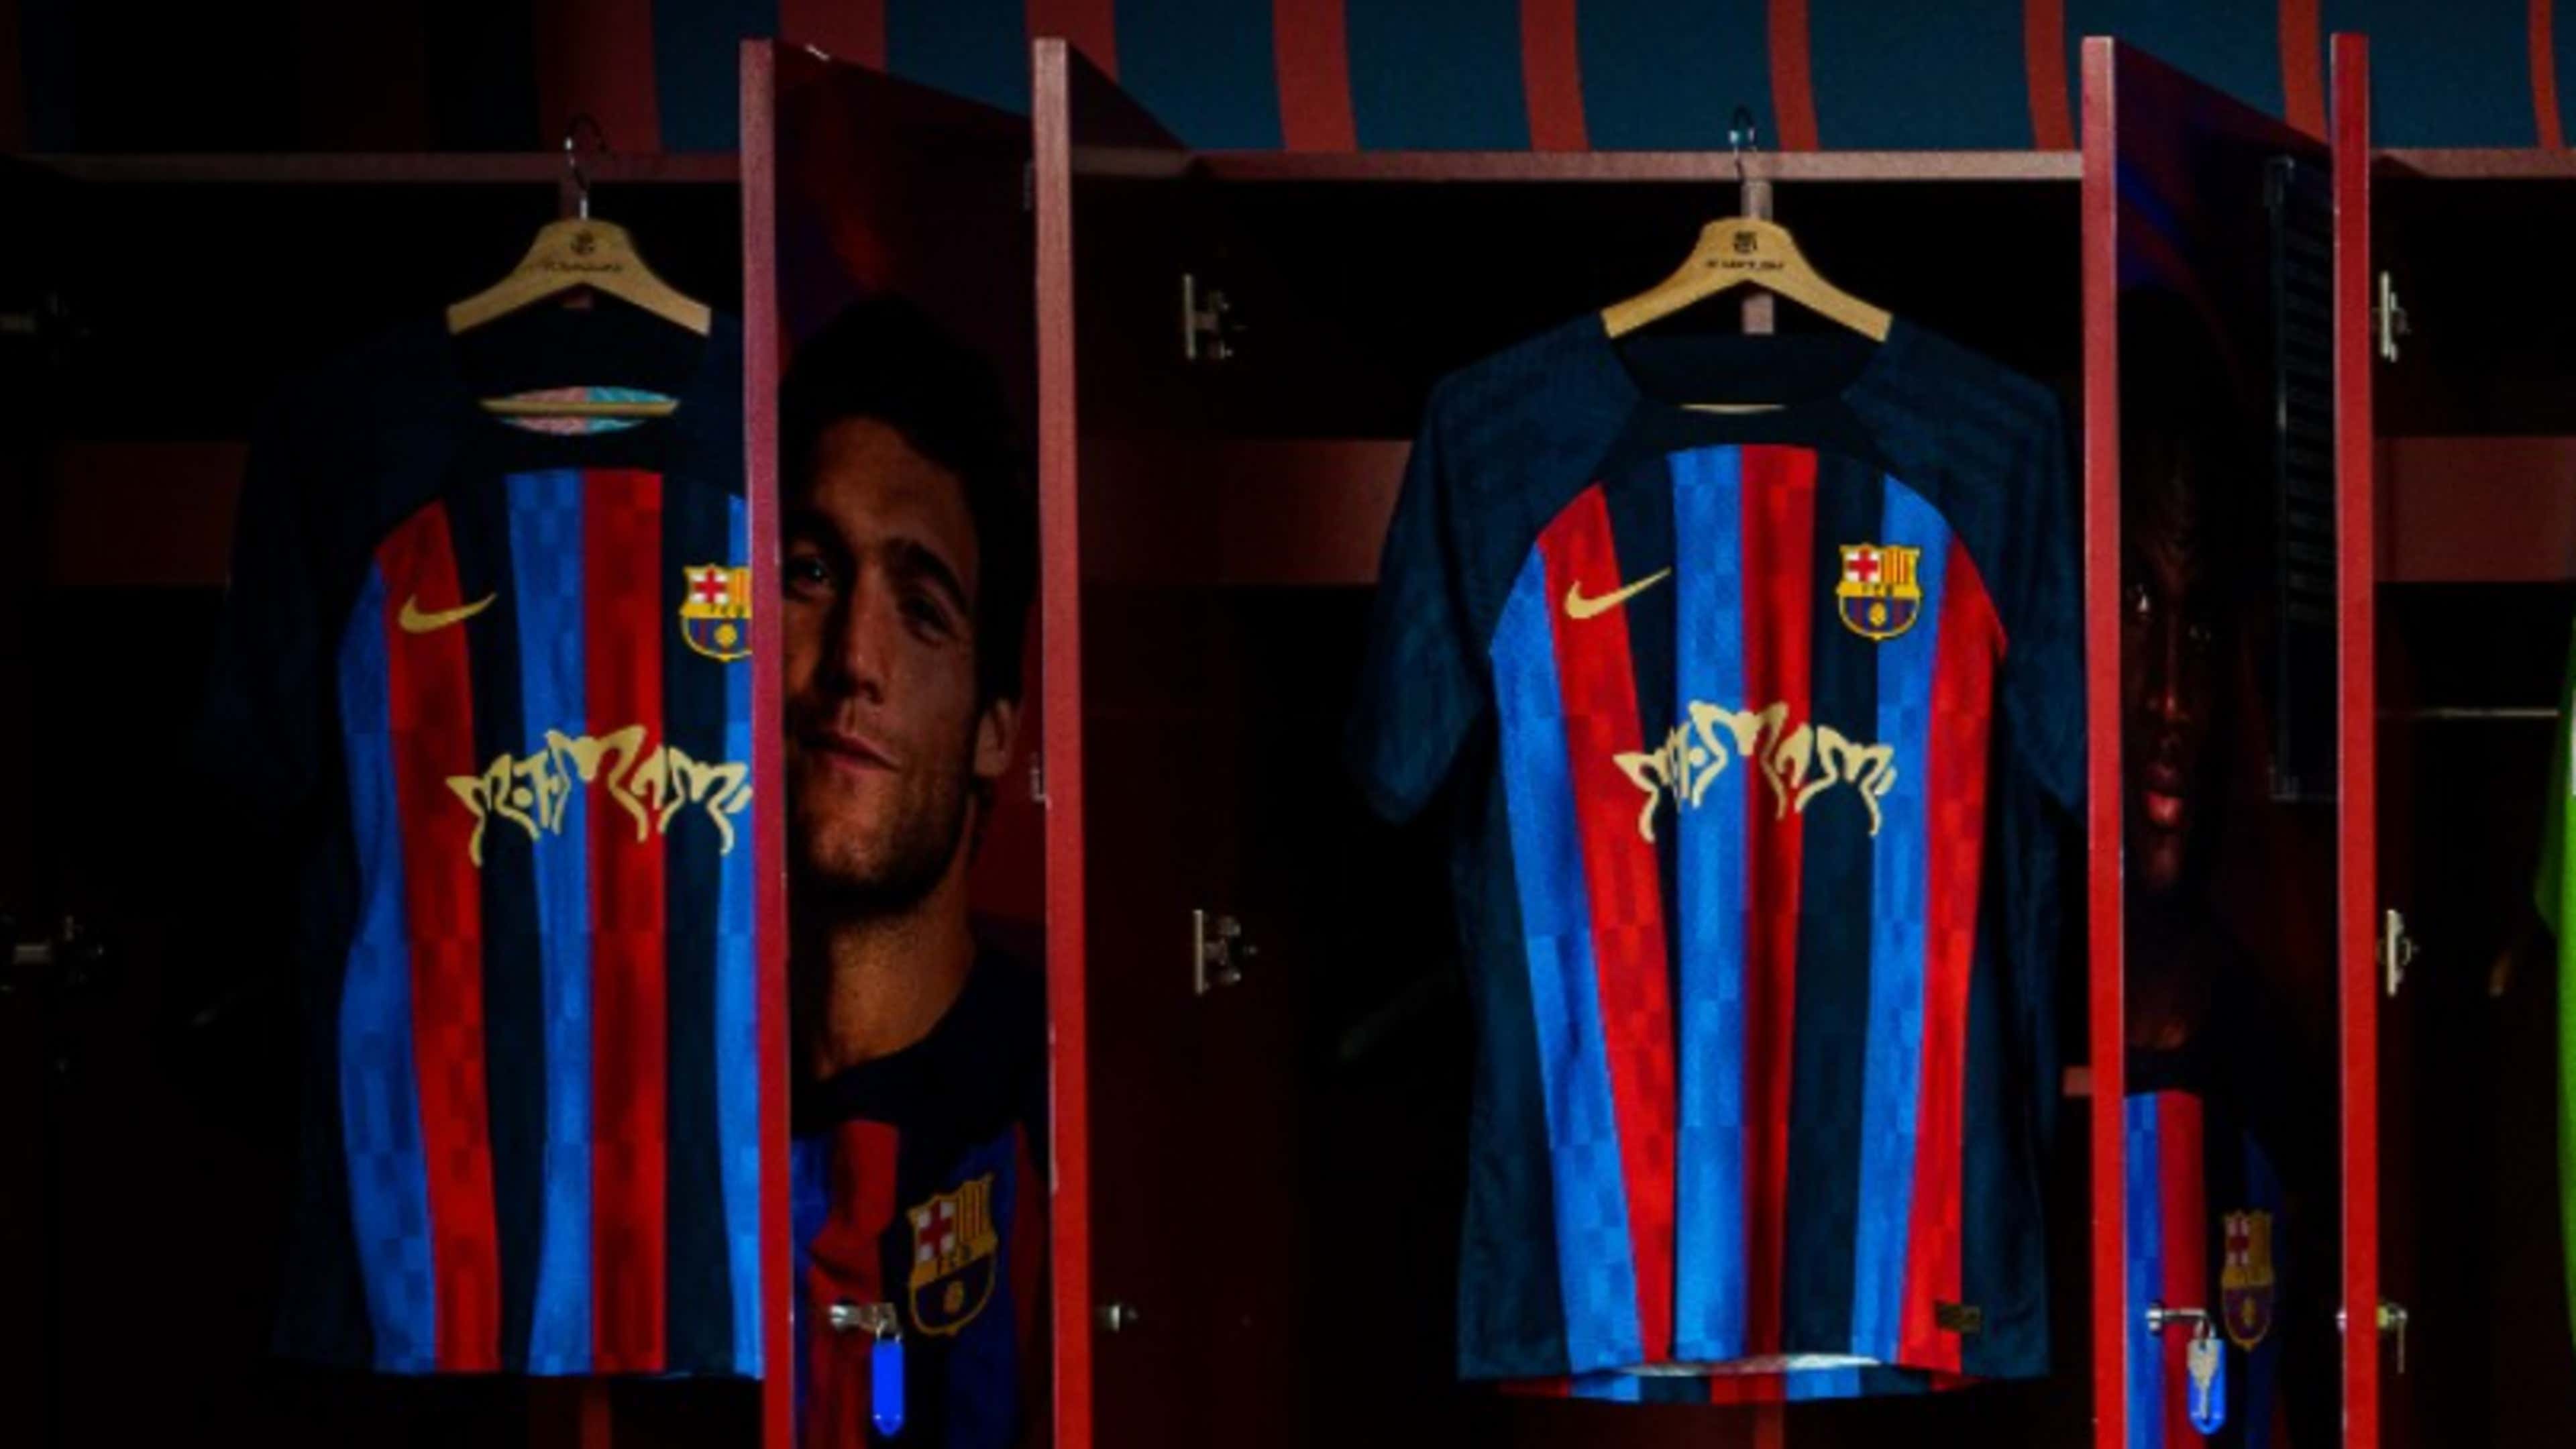 Camiseta del Barcelona con Motomami de Rosalía en el Clásico